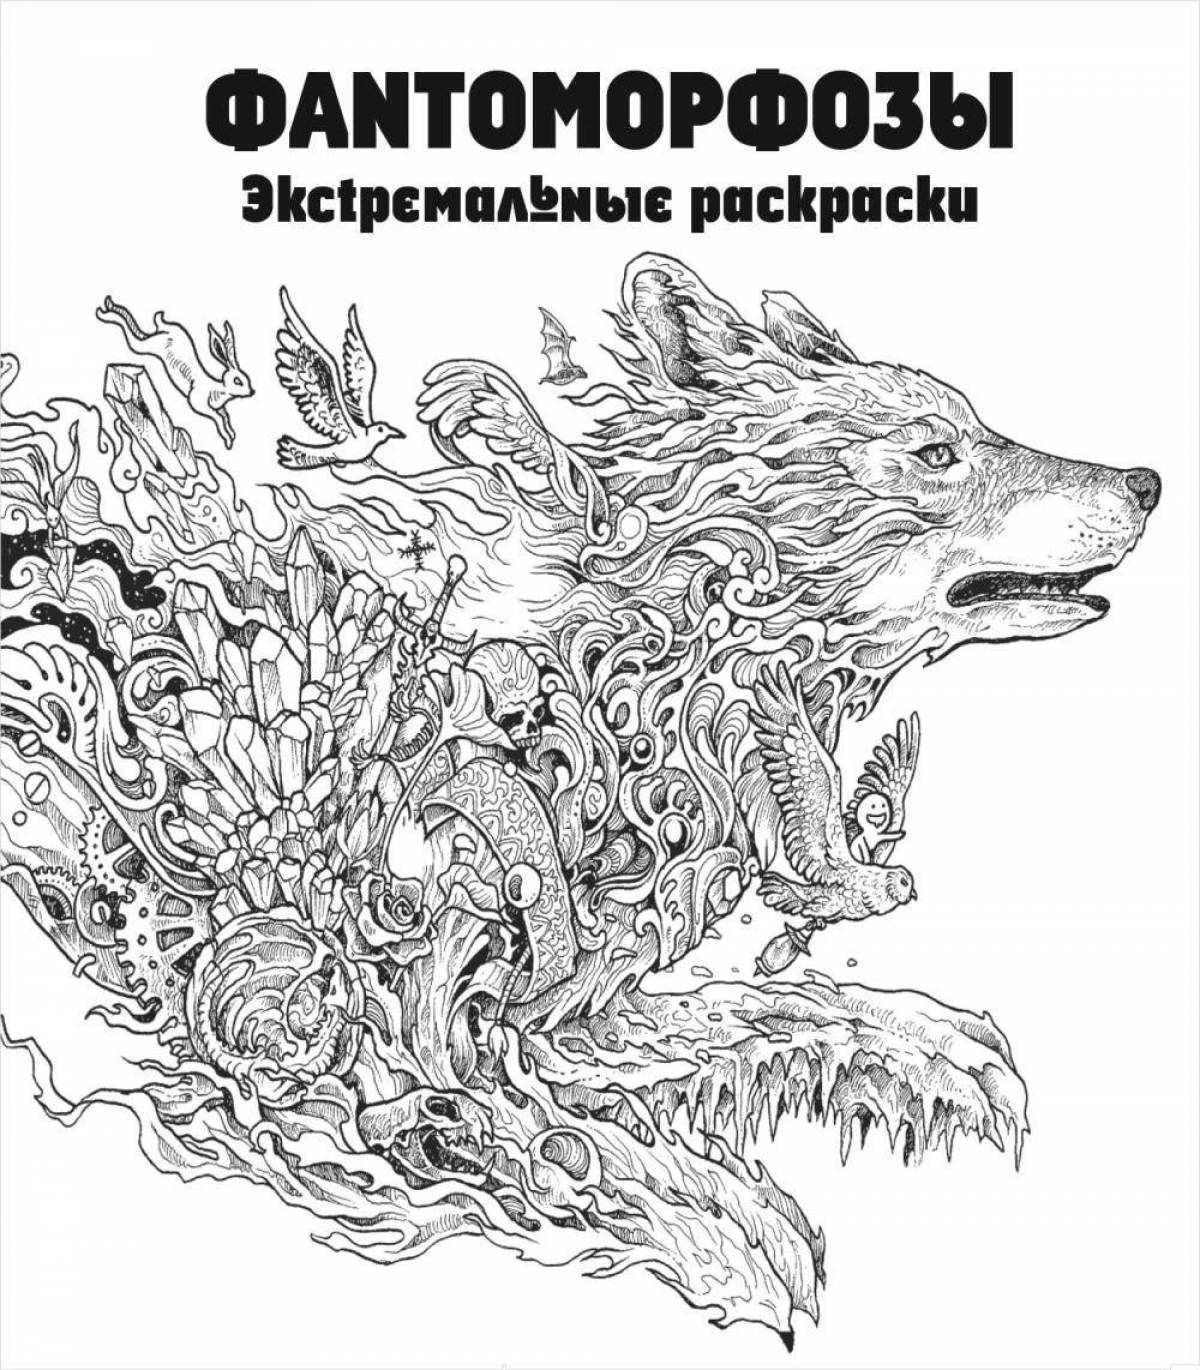 Brilliant metamorphosis coloring book